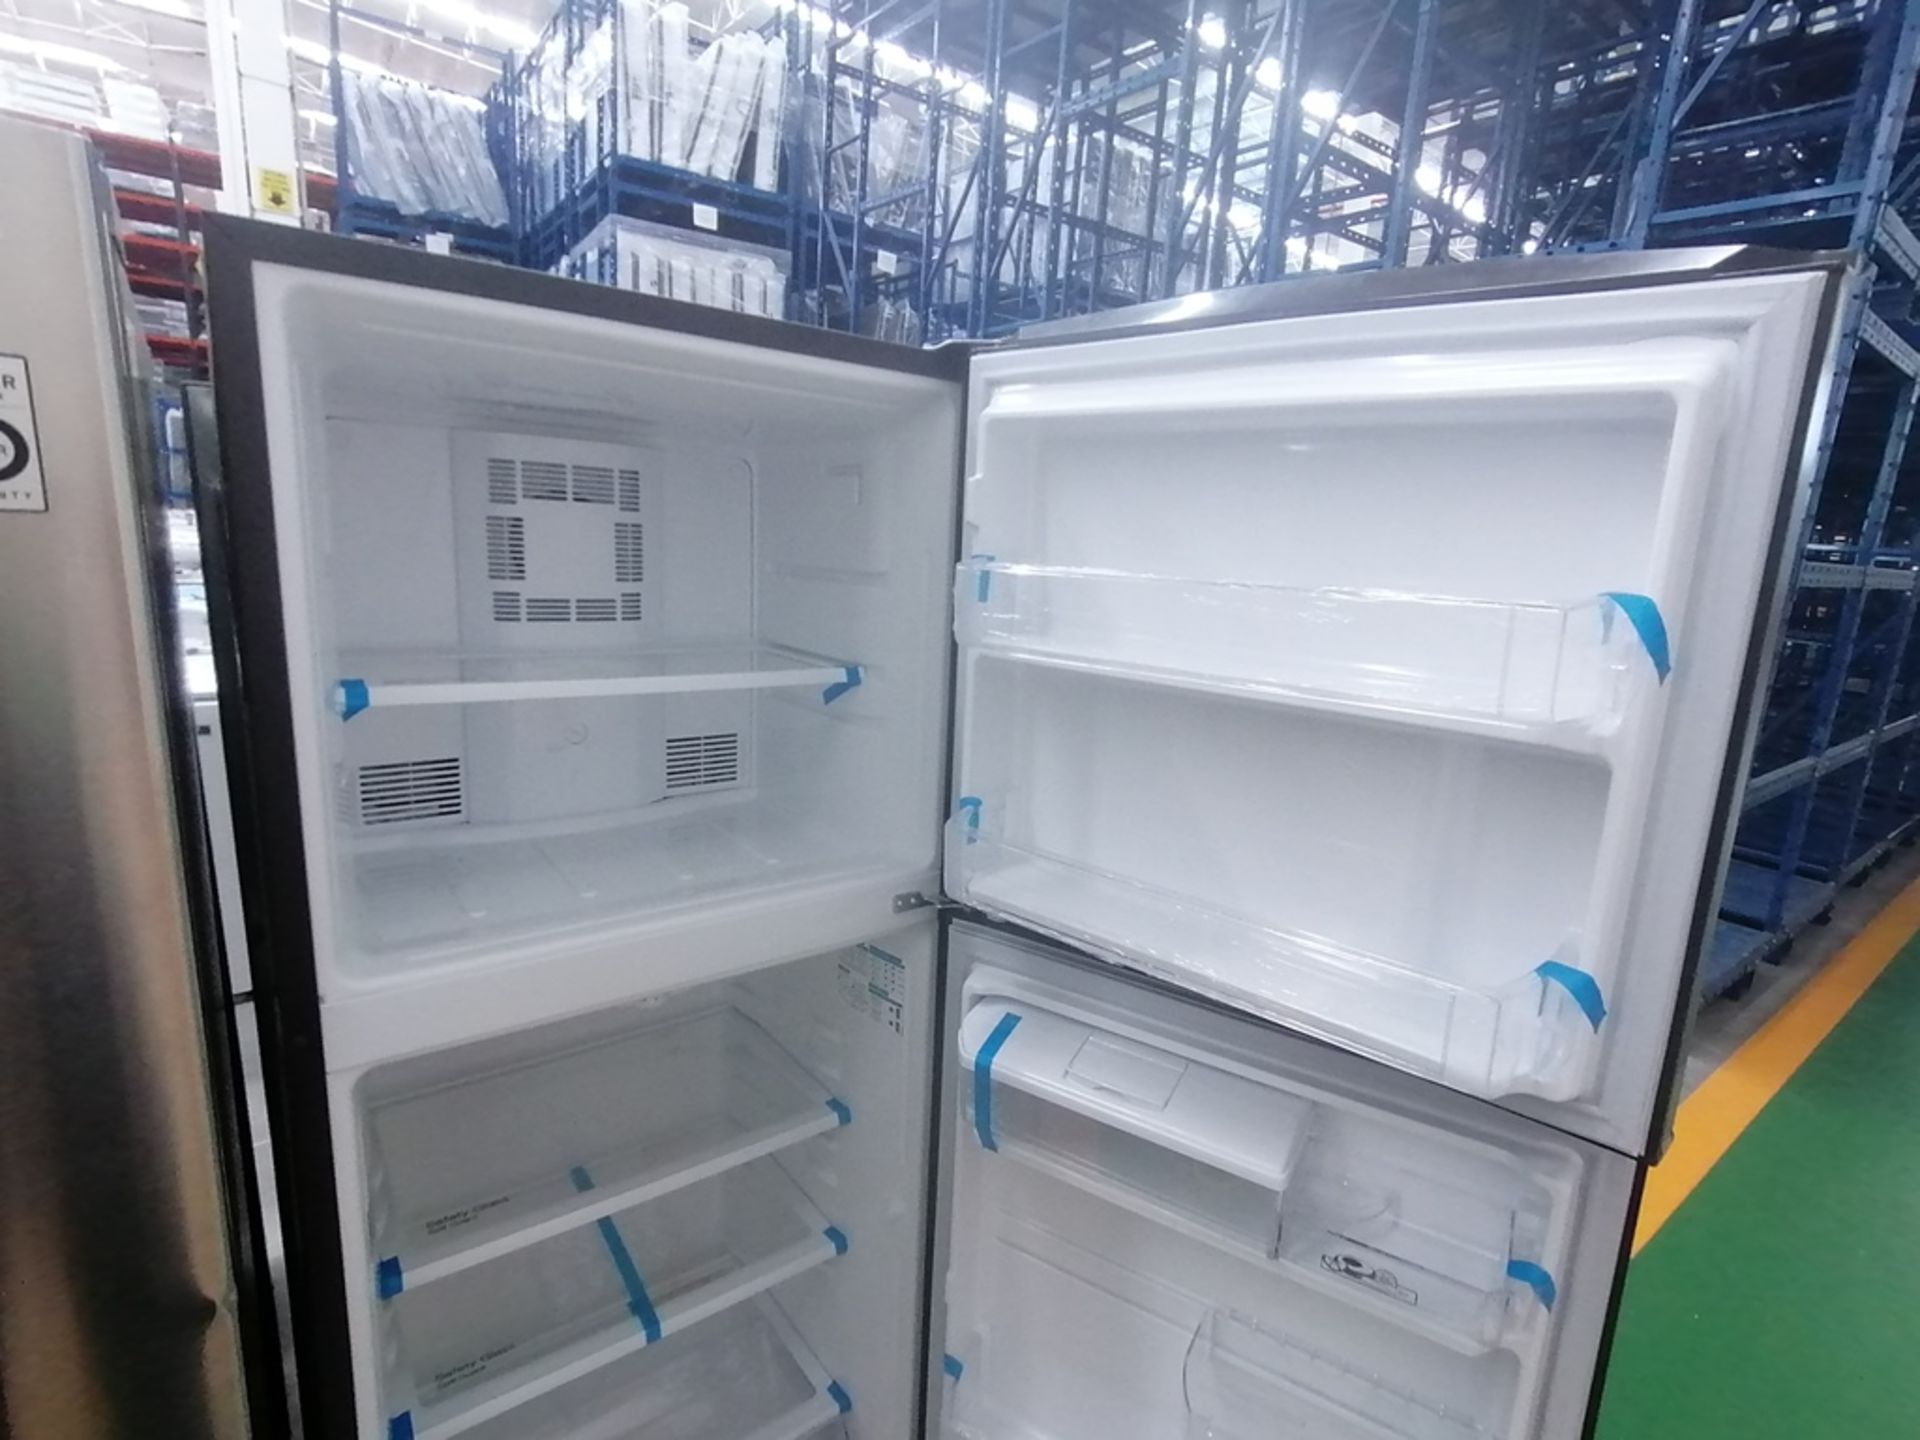 Lote de 2 refrigeradores incluye: 1 Refrigerador con dispensador de agua, Marca Mabe, Modelo RME360 - Image 8 of 15